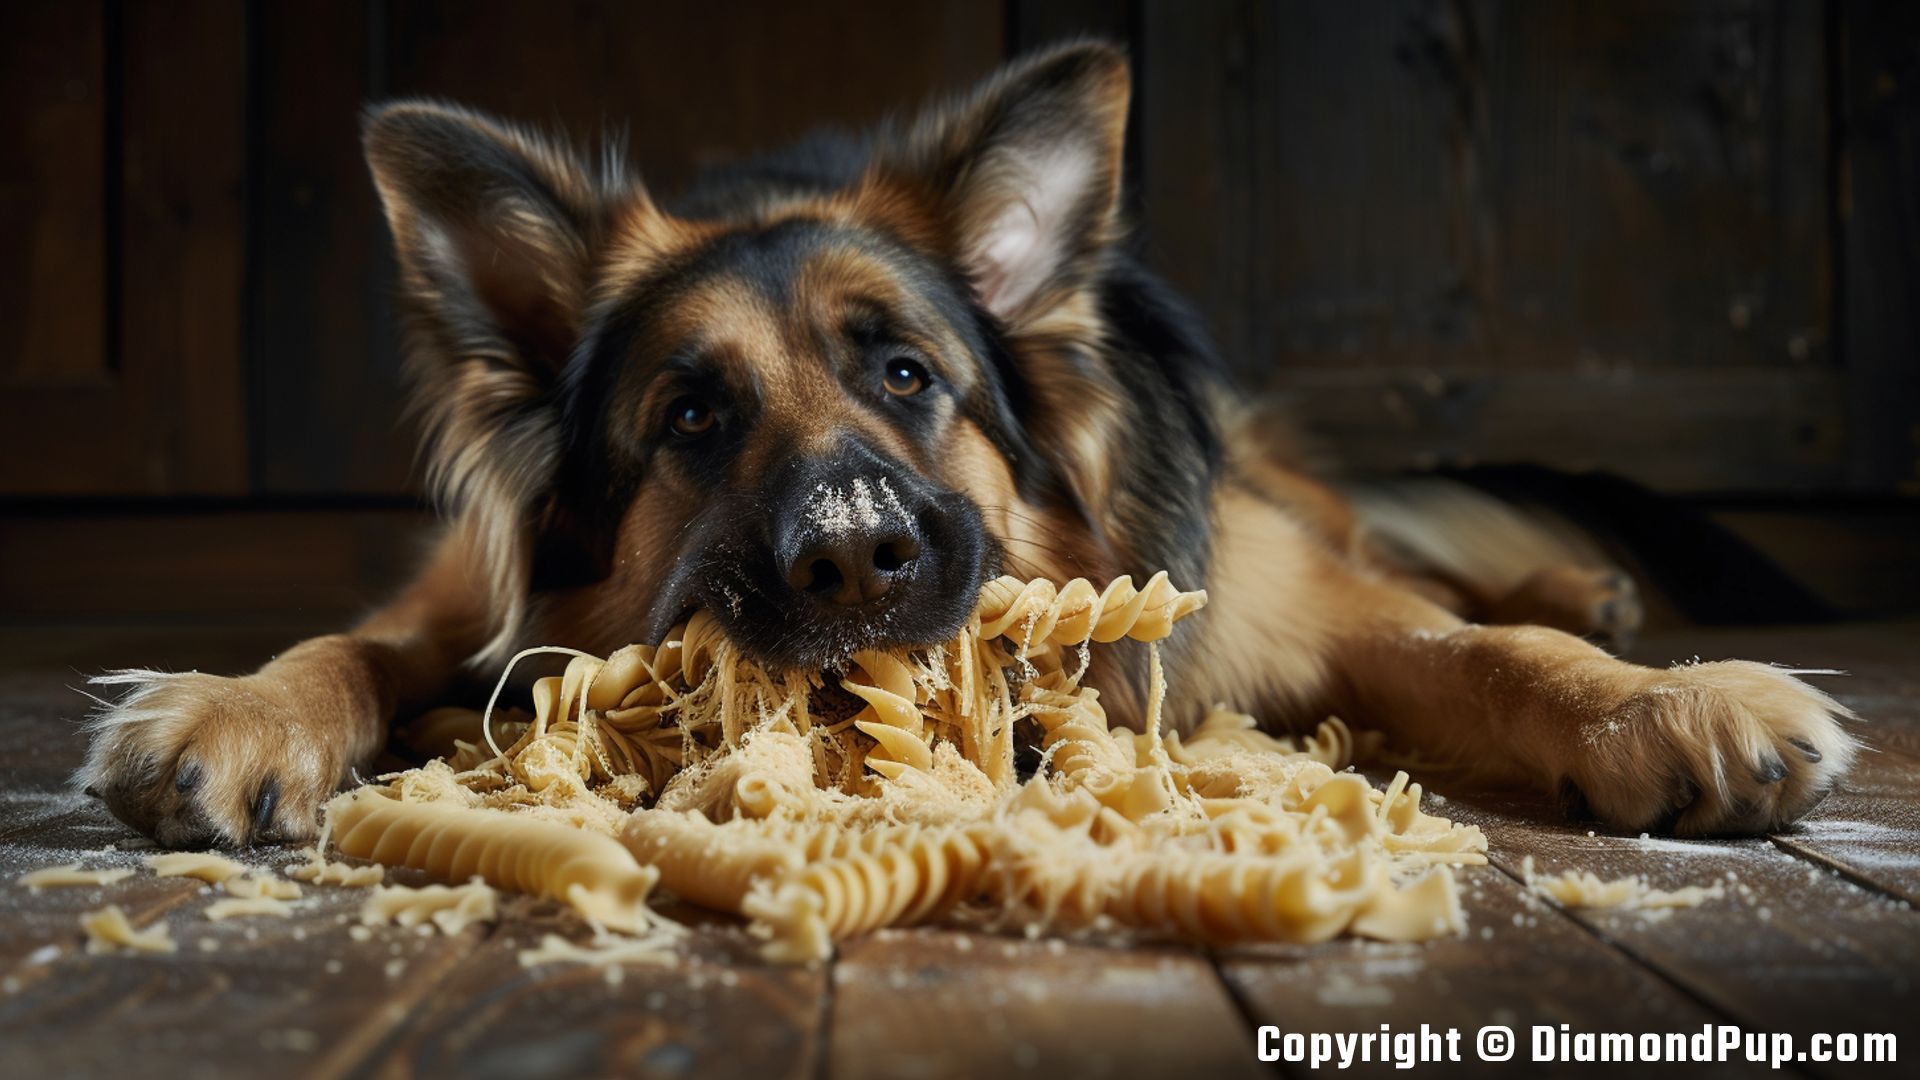 Photo of a Cute German Shepherd Eating Pasta